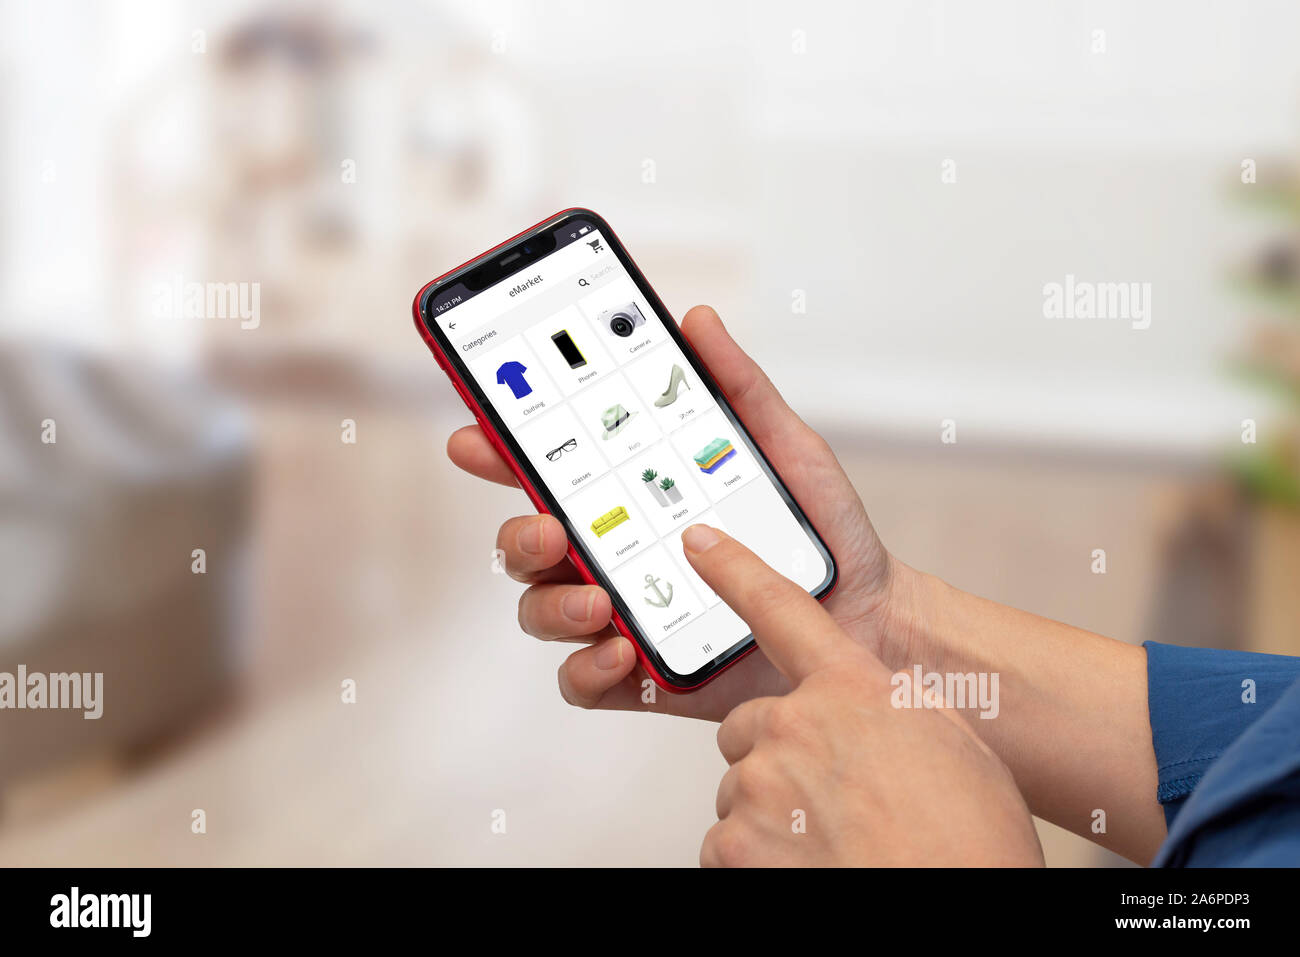 Frau online shop App auf Smart Phone. Close-up Szene mit Shopping App Konzept. Moderne smart phone mit runden Kanten in der Hand. Stockfoto